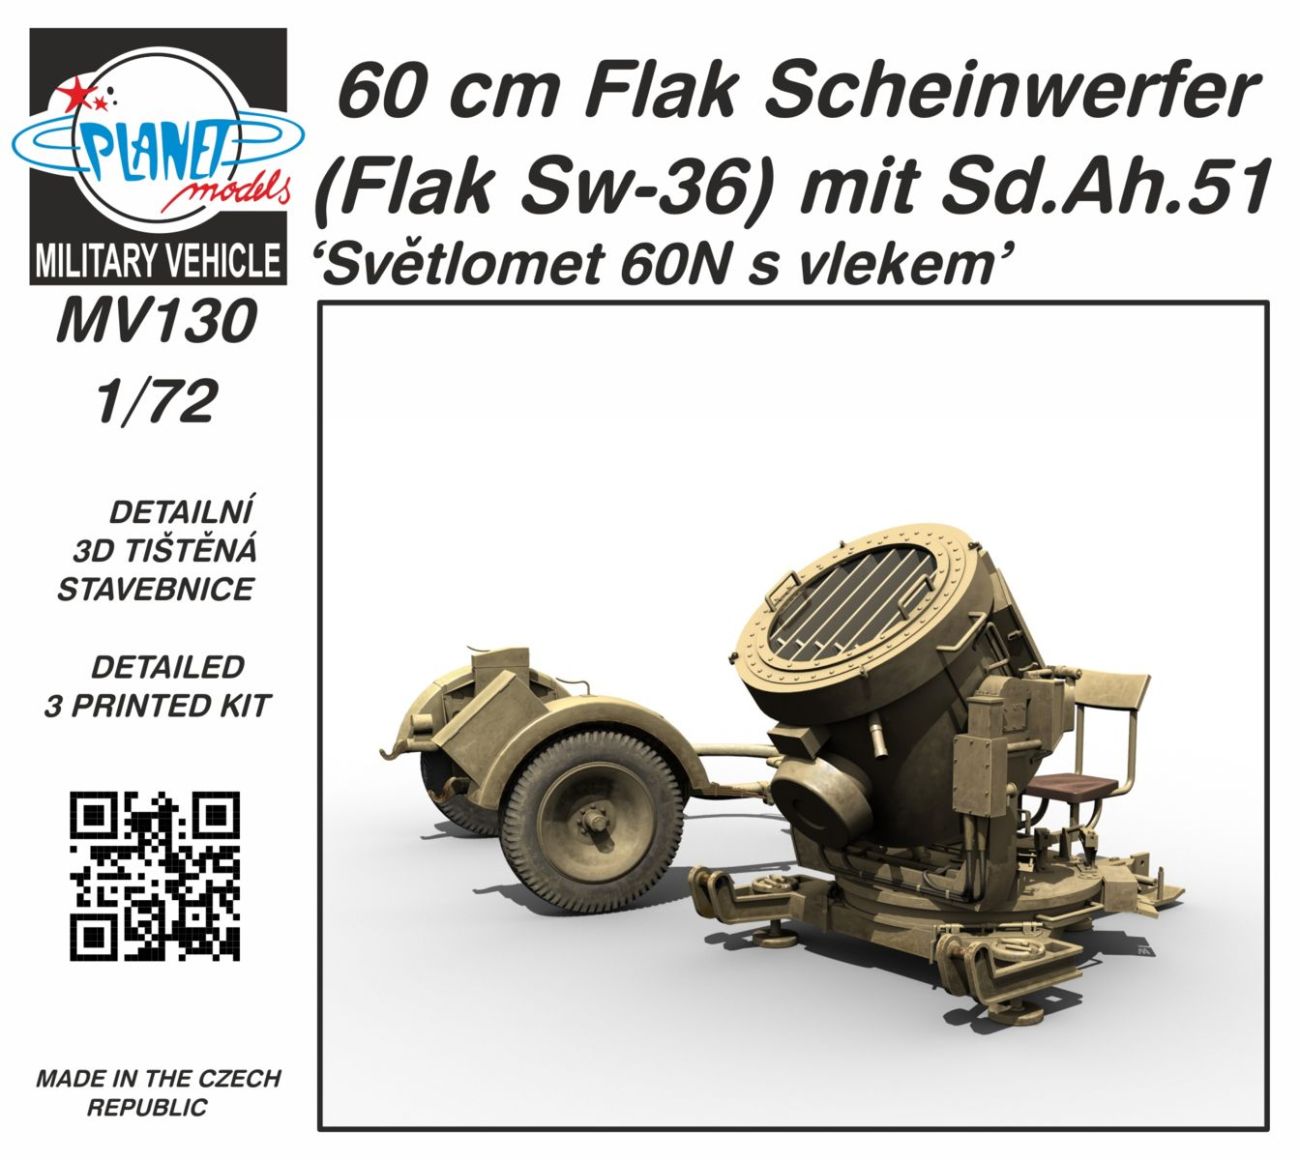 60cm Flak Scheinwerfer (Flak Sw-36) mit Sd.Ah.51